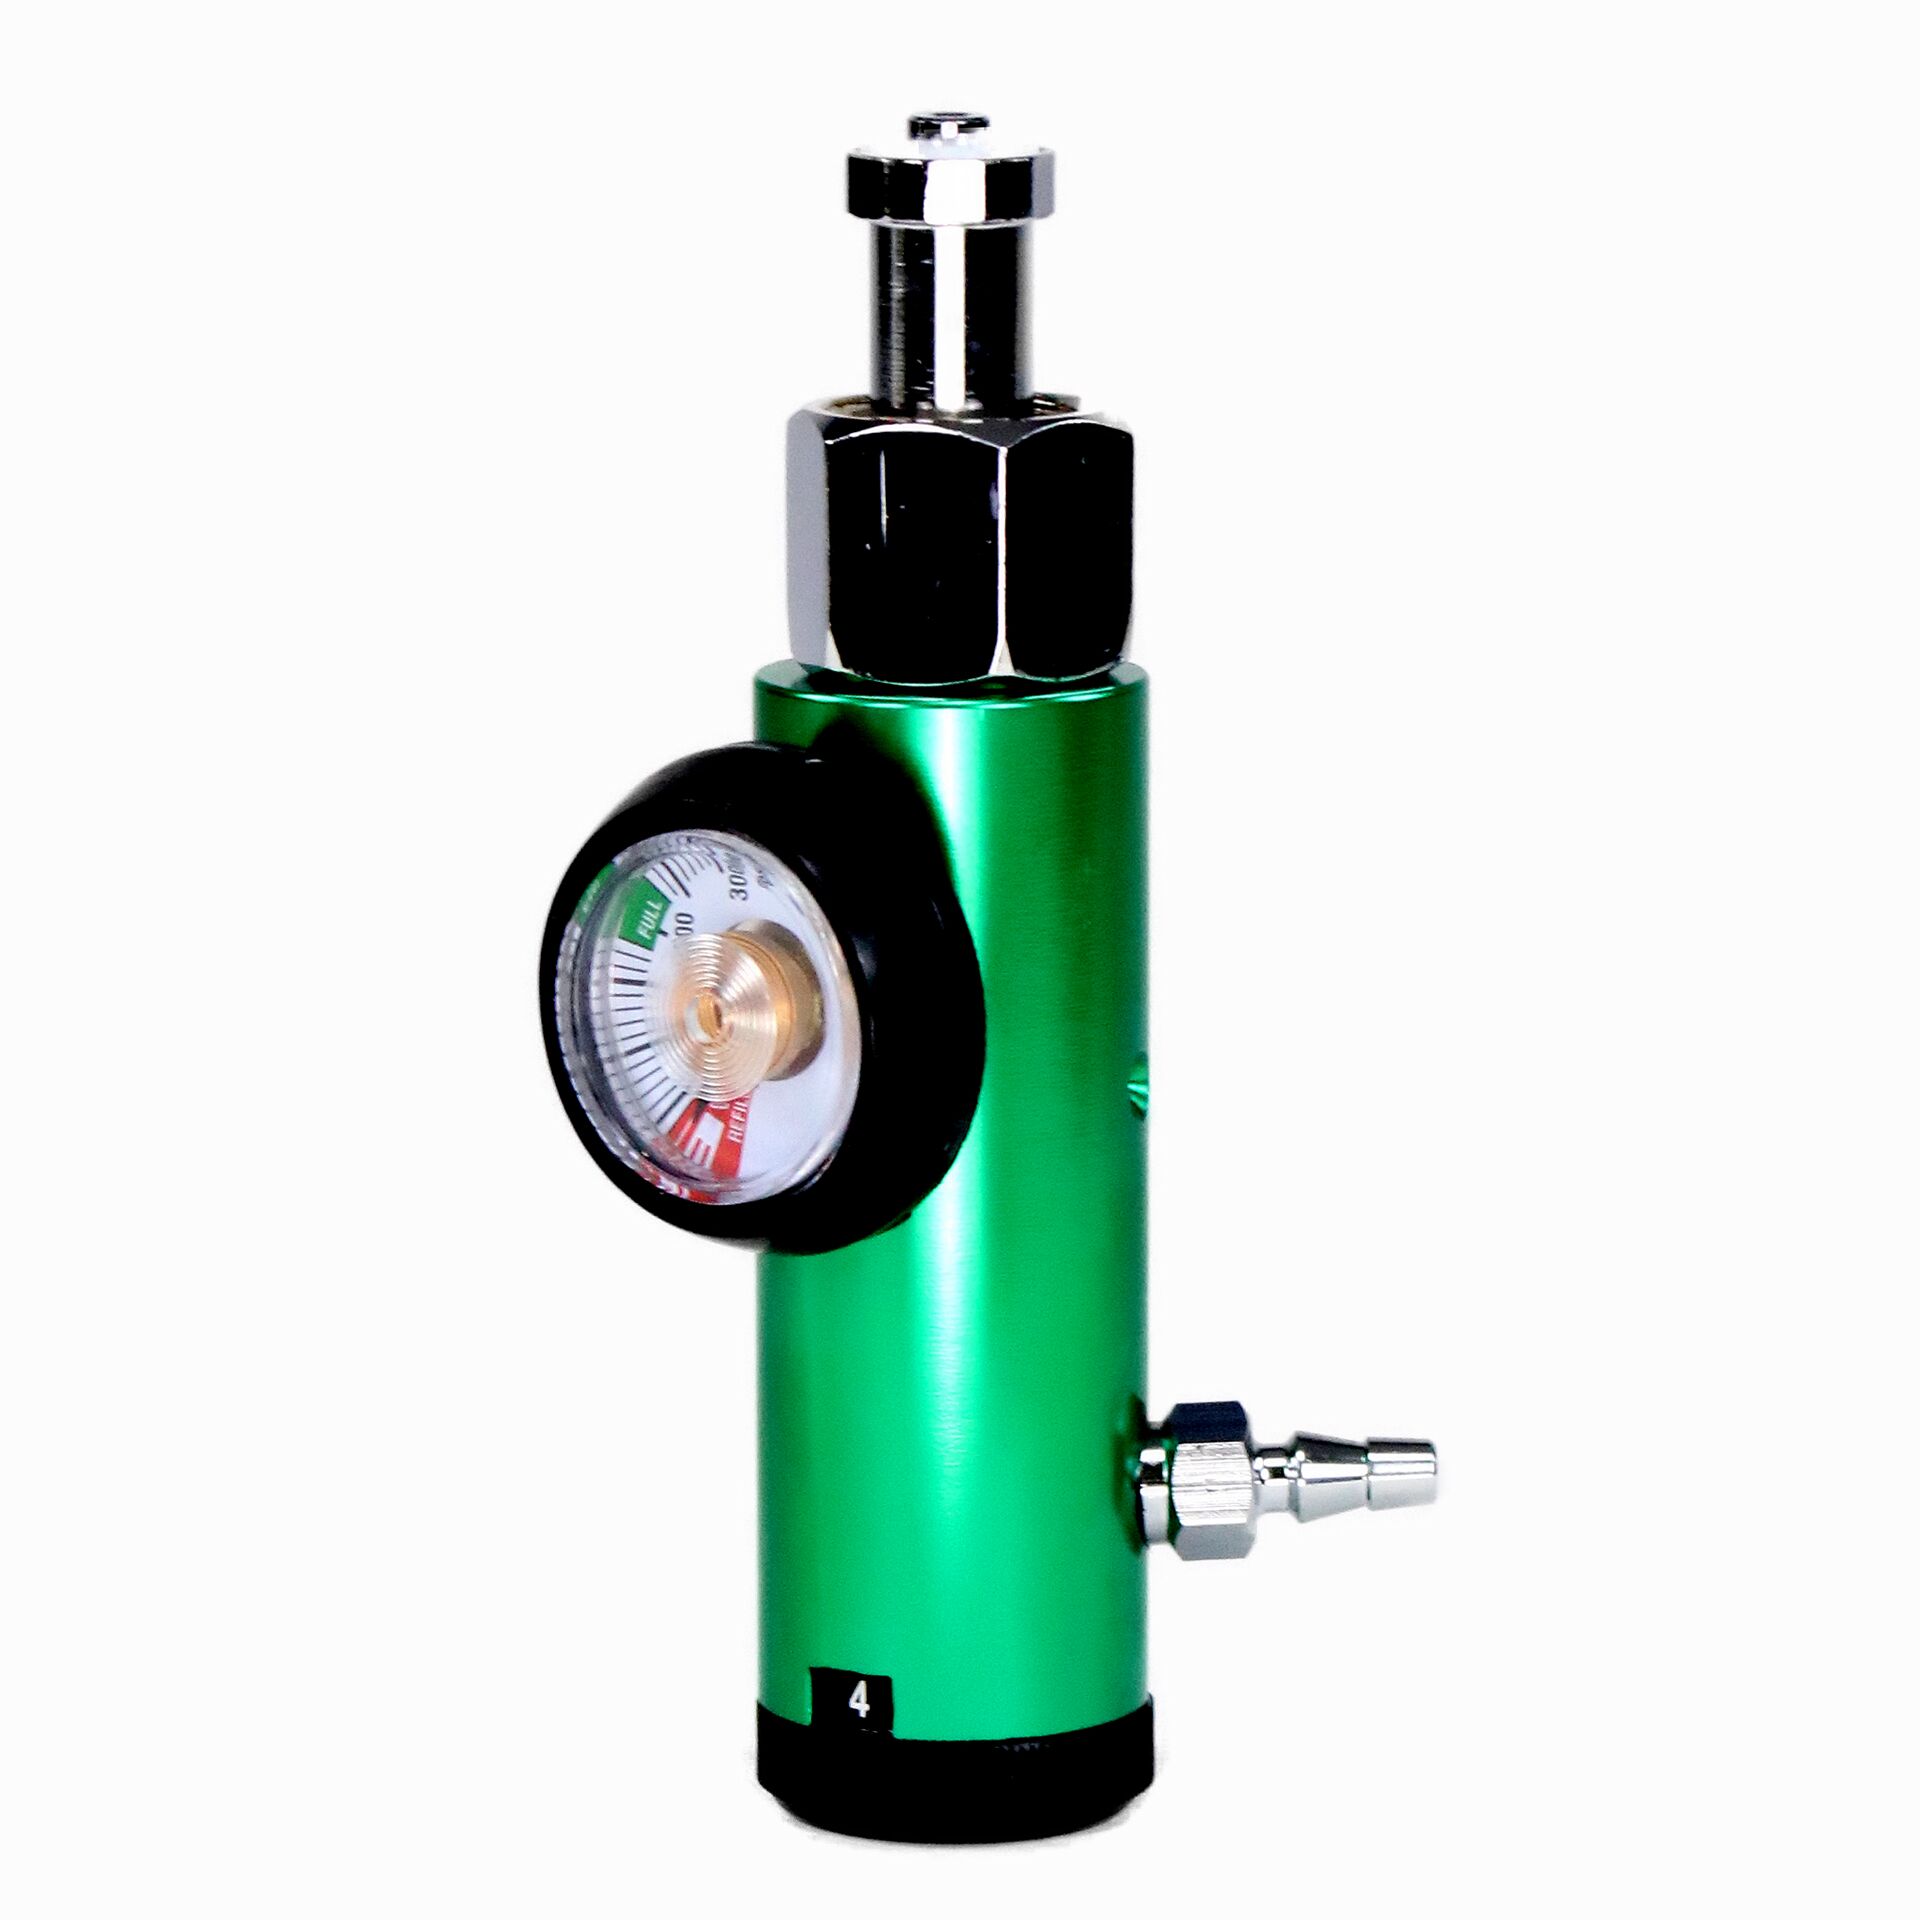 CGA320 Carbon Dioxide pressure regulator for CO2 cylinder